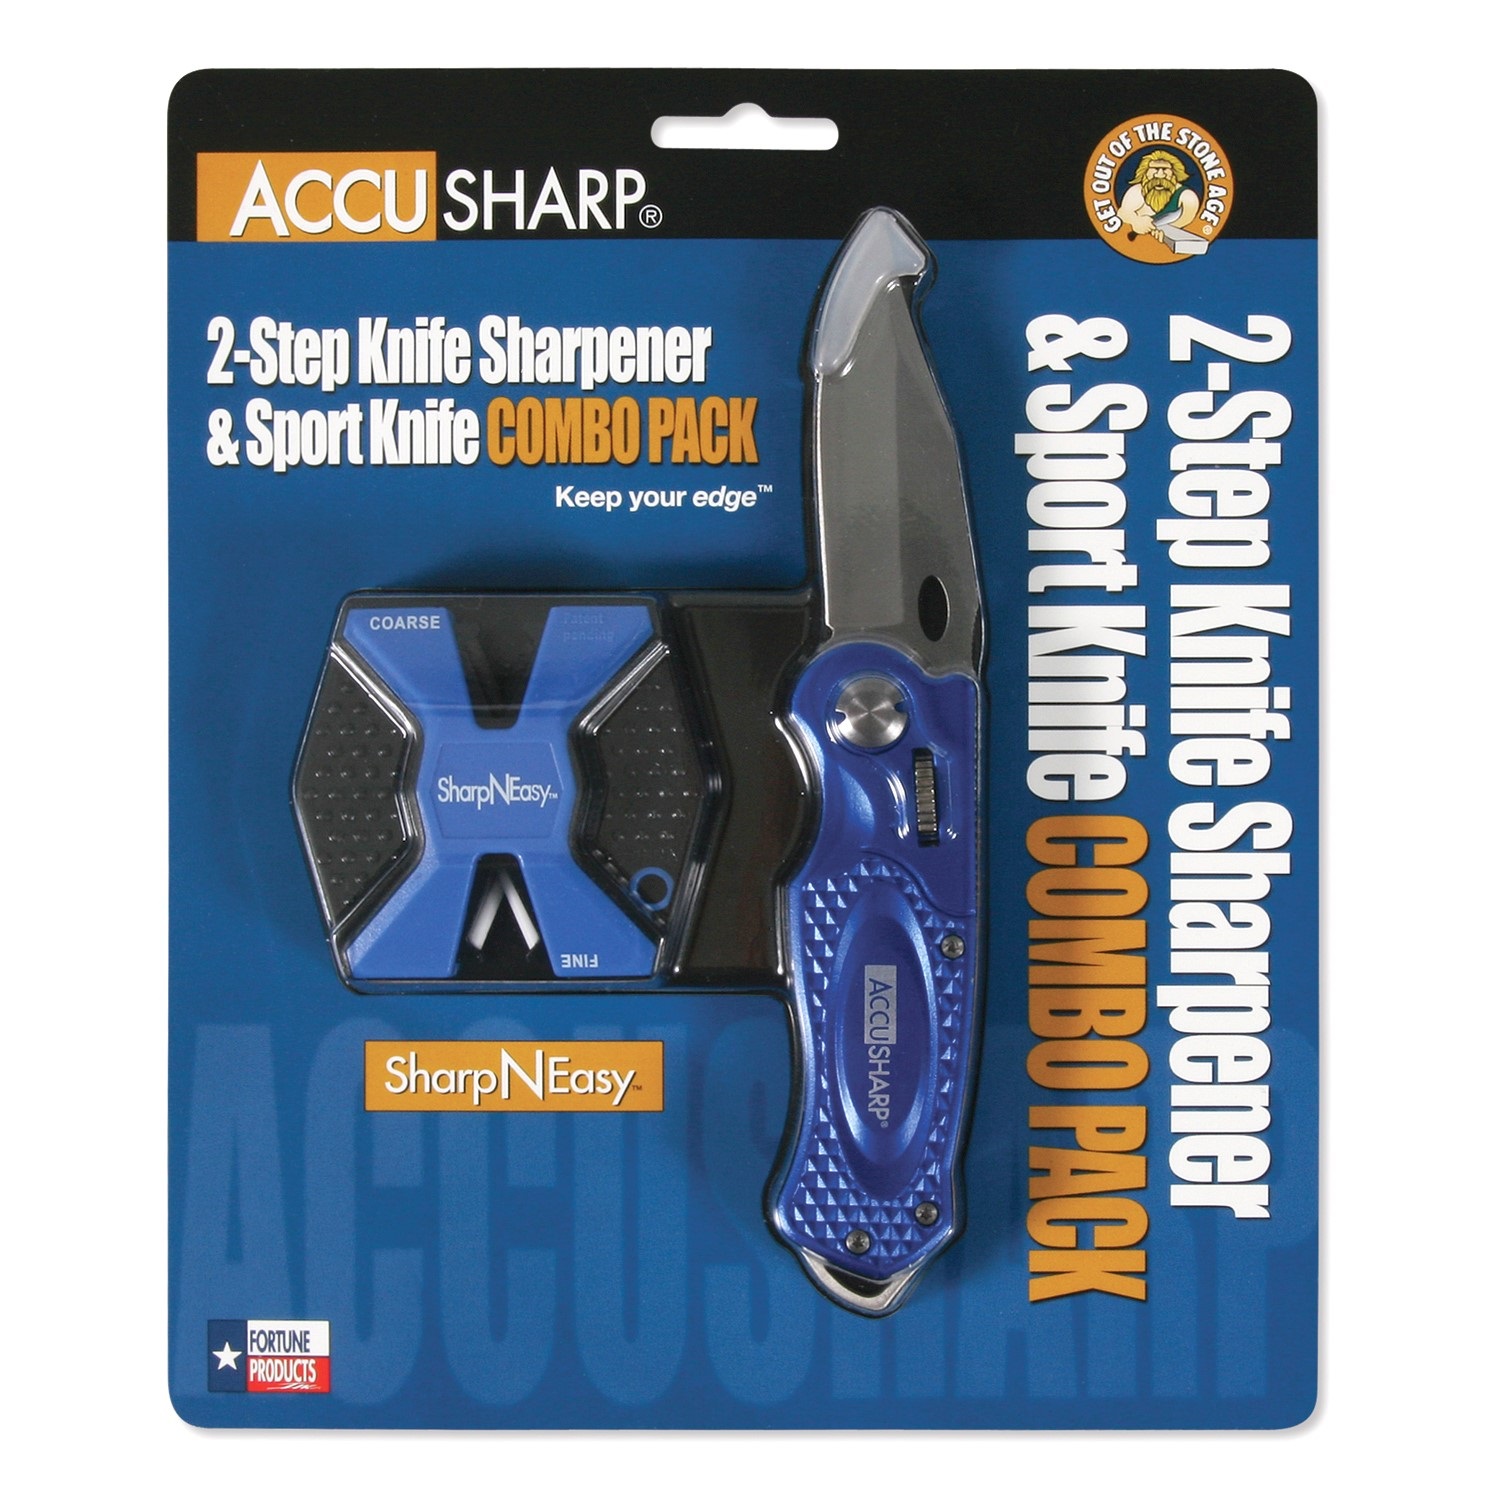 AccuSharp AccuSharp And ShearSharp Combo, Knife And Tool Sharpener